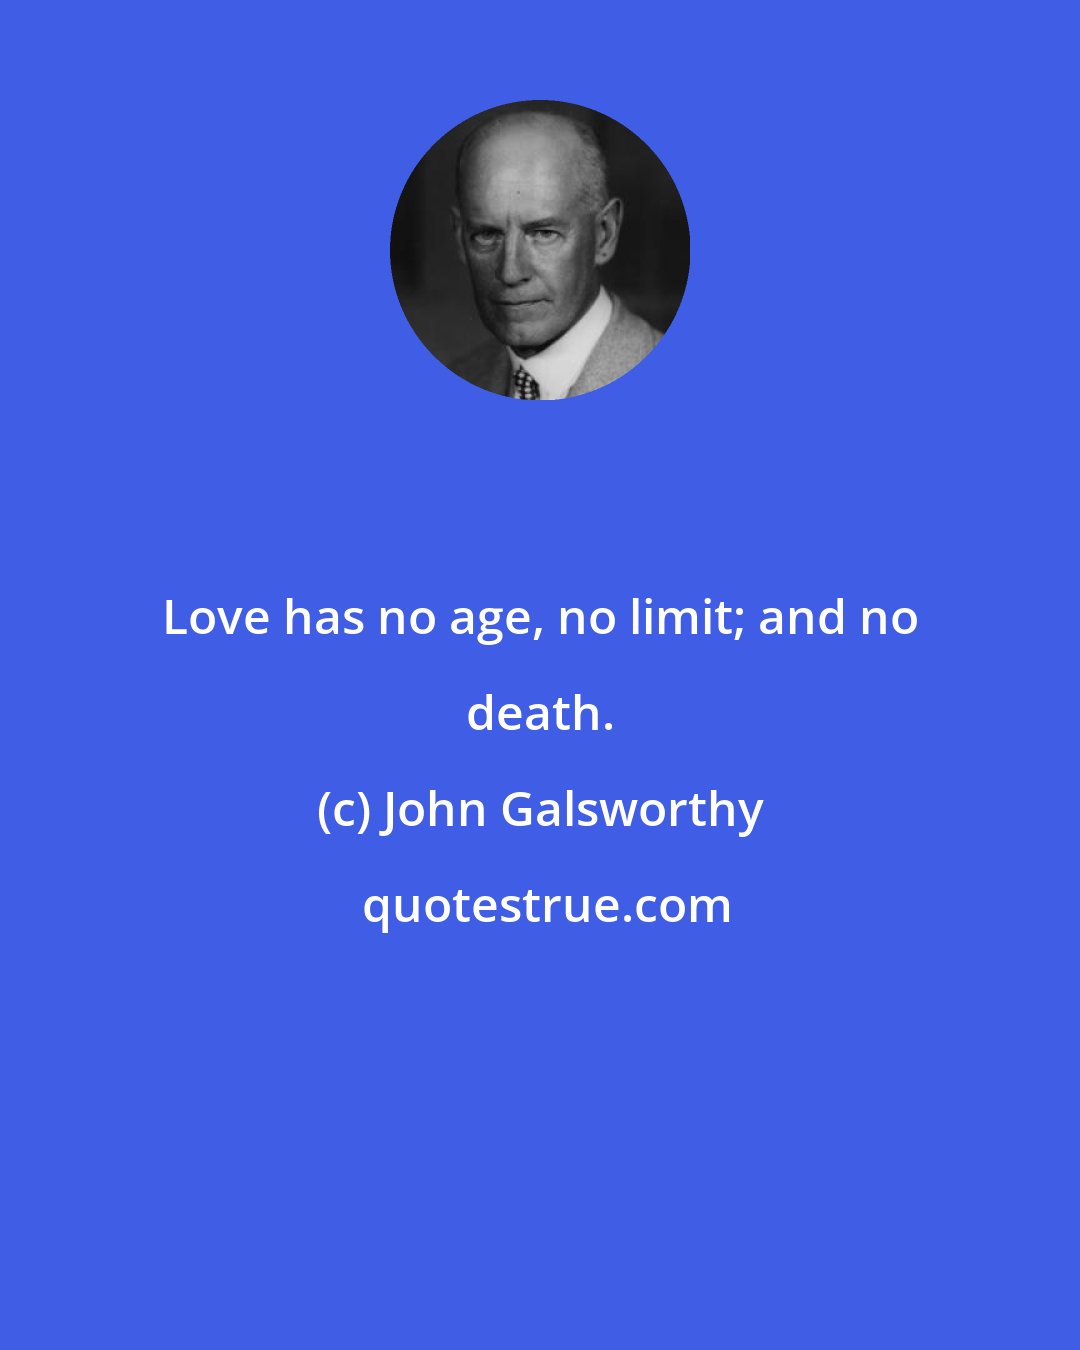 John Galsworthy: Love has no age, no limit; and no death.